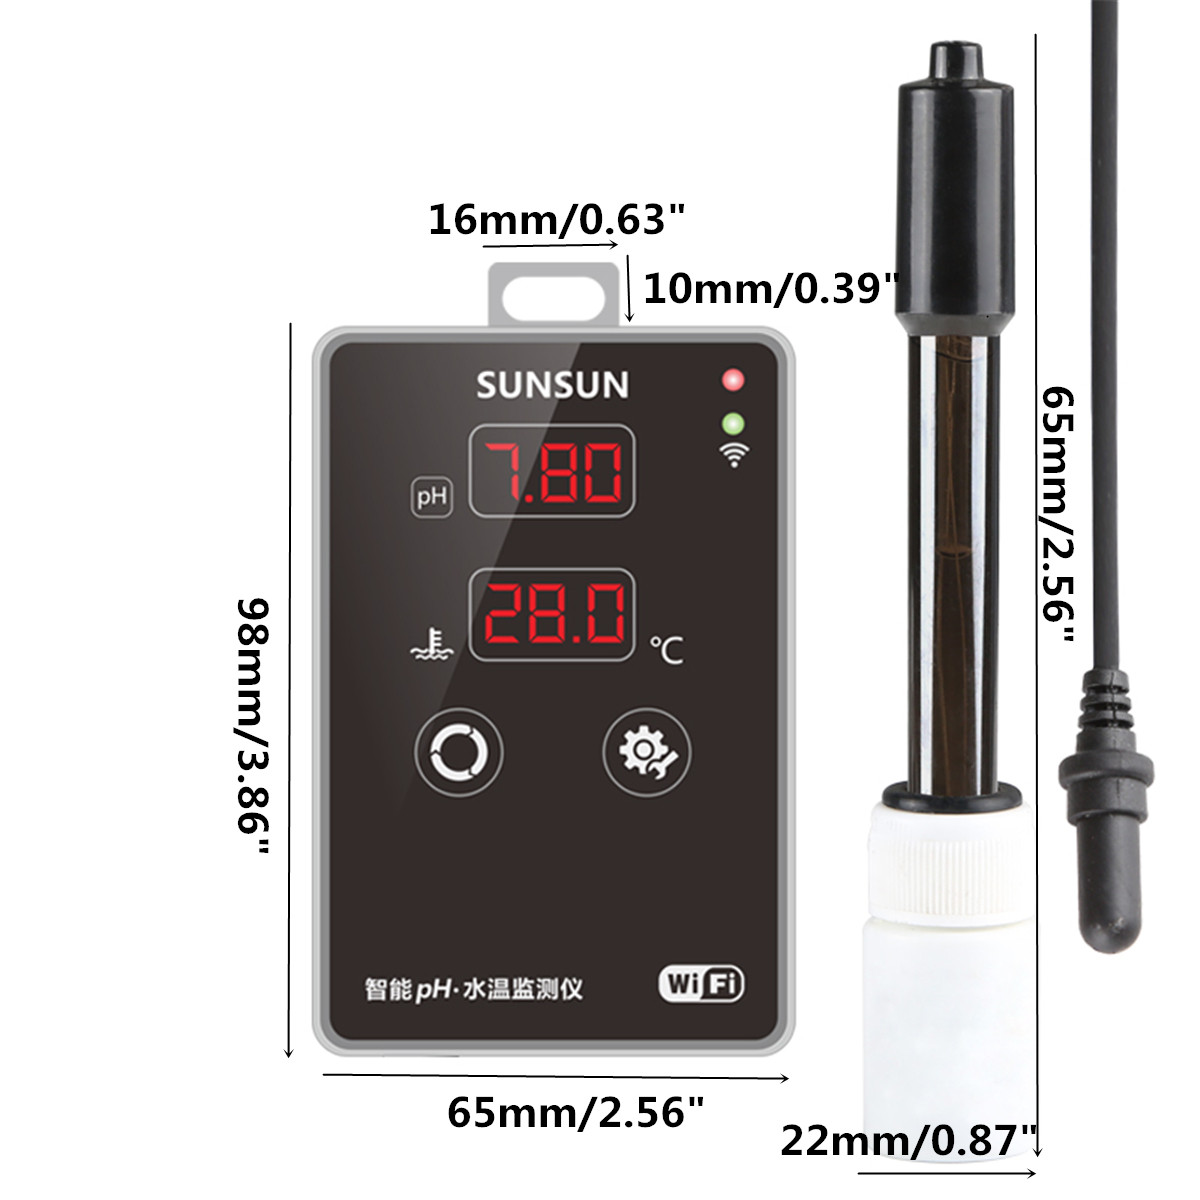 Aquarium-Digital-LCD-PH-Meter-Temperature-Tester--Pool-Fish-Tank-Water-Temperature-Detector-Thermome-1364309